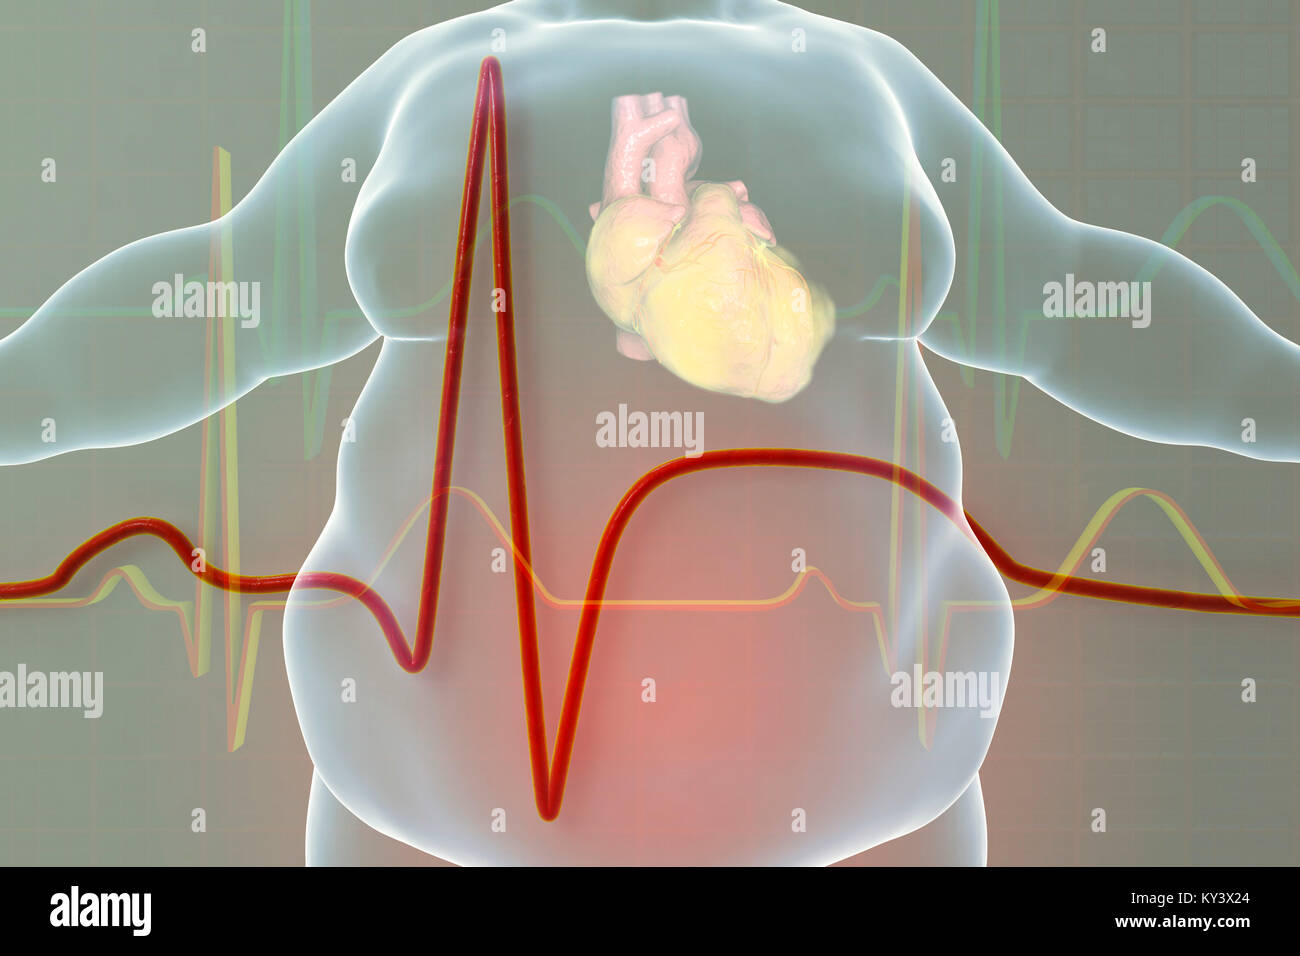 Attaque cardiaque chez l'homme obèse. Conceptual illustration montrant un  cœur gras dans un excès de l'homme et de l'électrocardiogramme avec des  signes d'infarctus du myocarde (crise cardiaque Photo Stock - Alamy